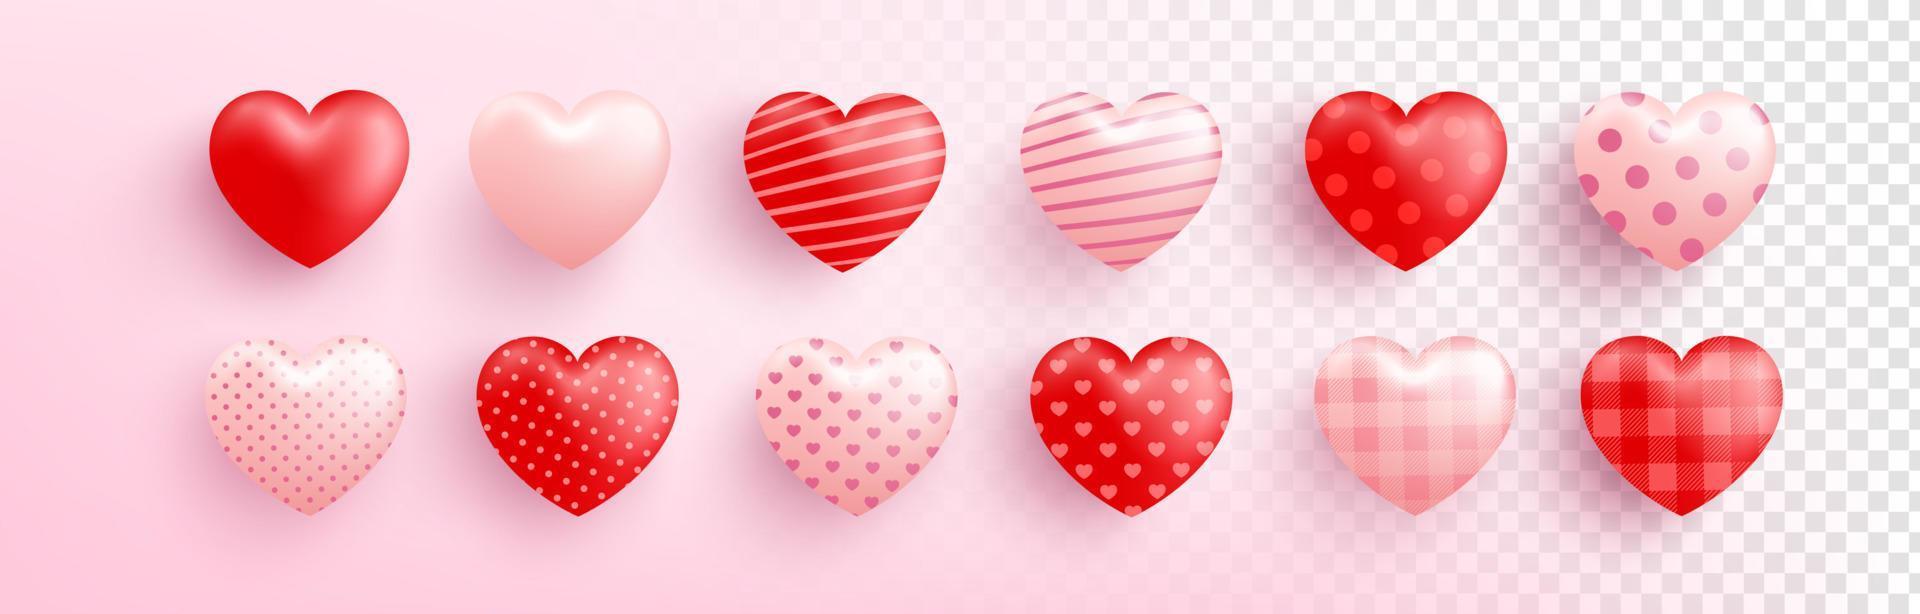 coeur doux rouge et rose avec différents motifs sur fond transparent. coeur mignon pour l'amour et la saint-valentin template.vector illustration eps 10 vecteur